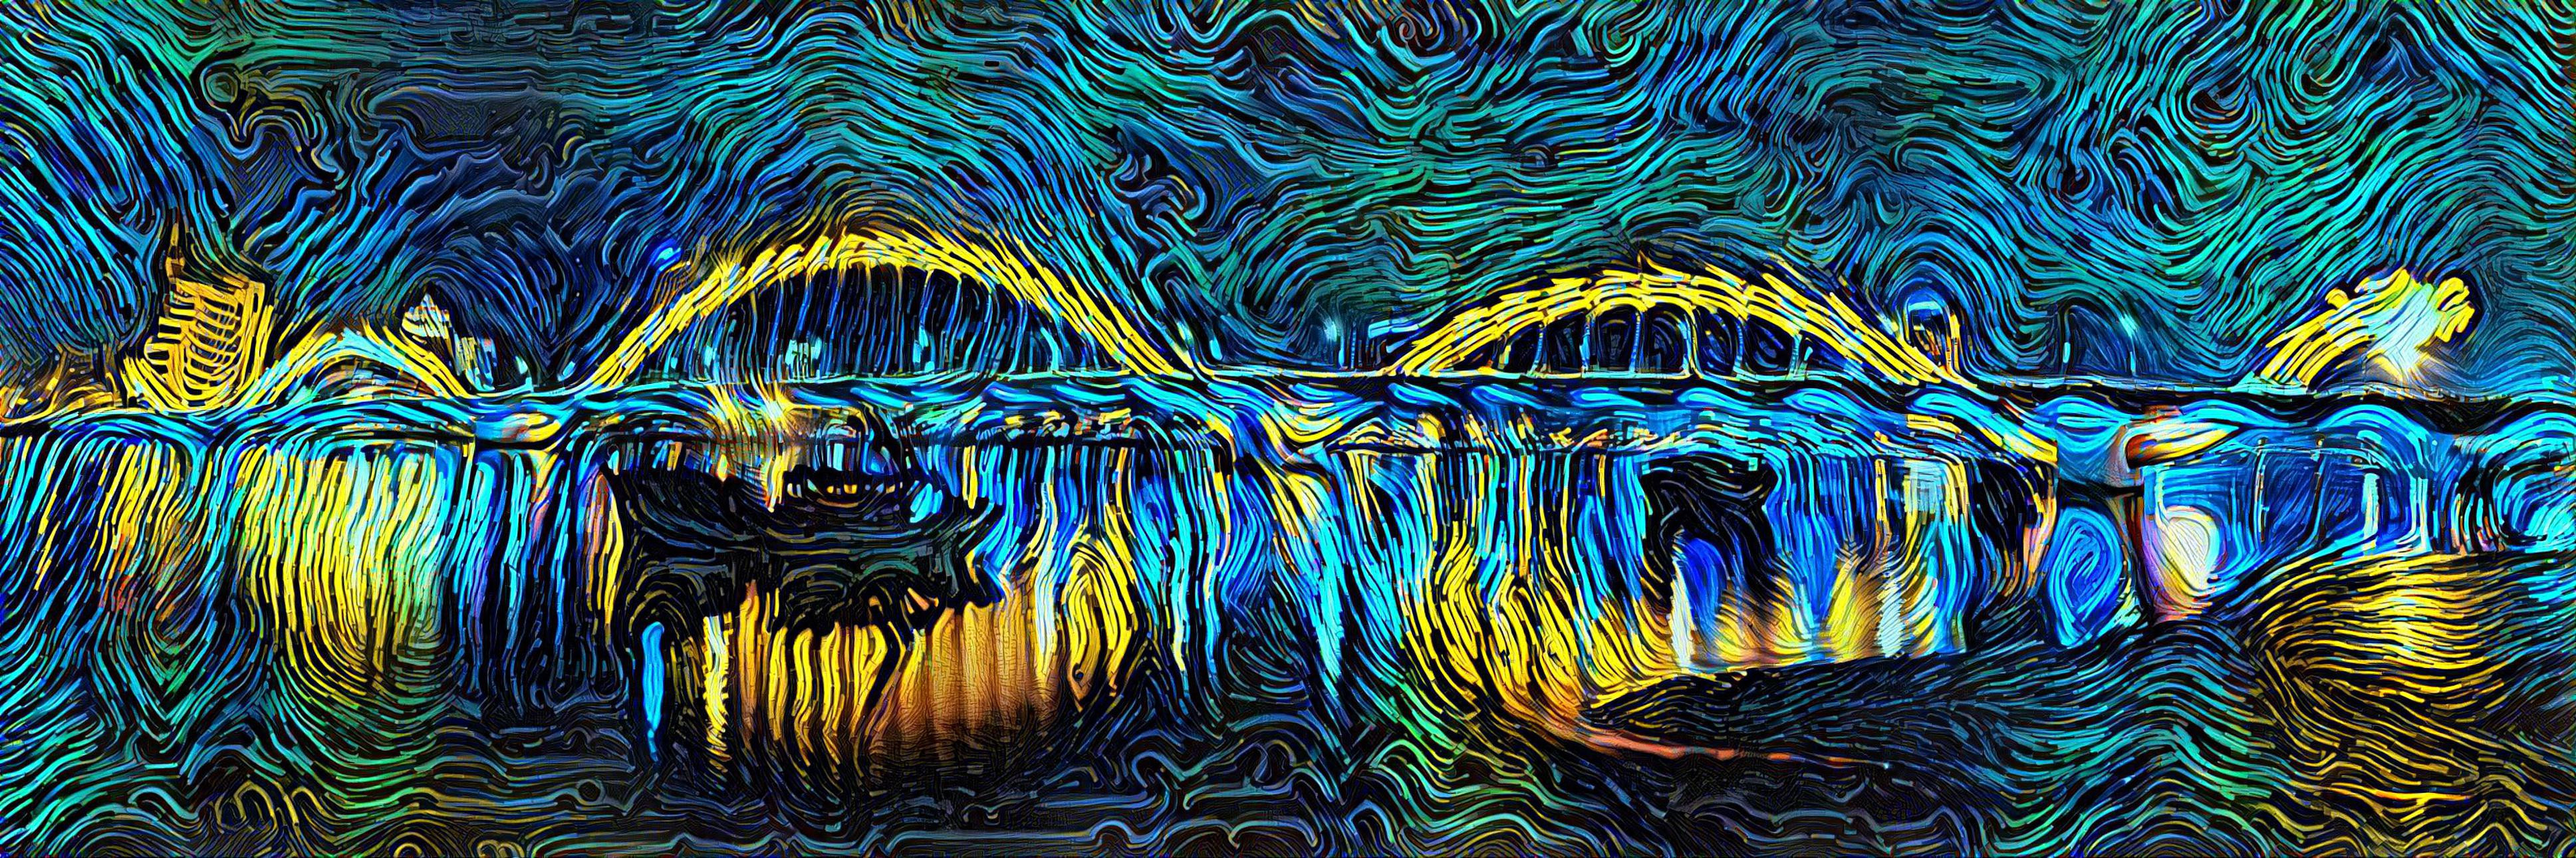 Dragon Bridge at Night